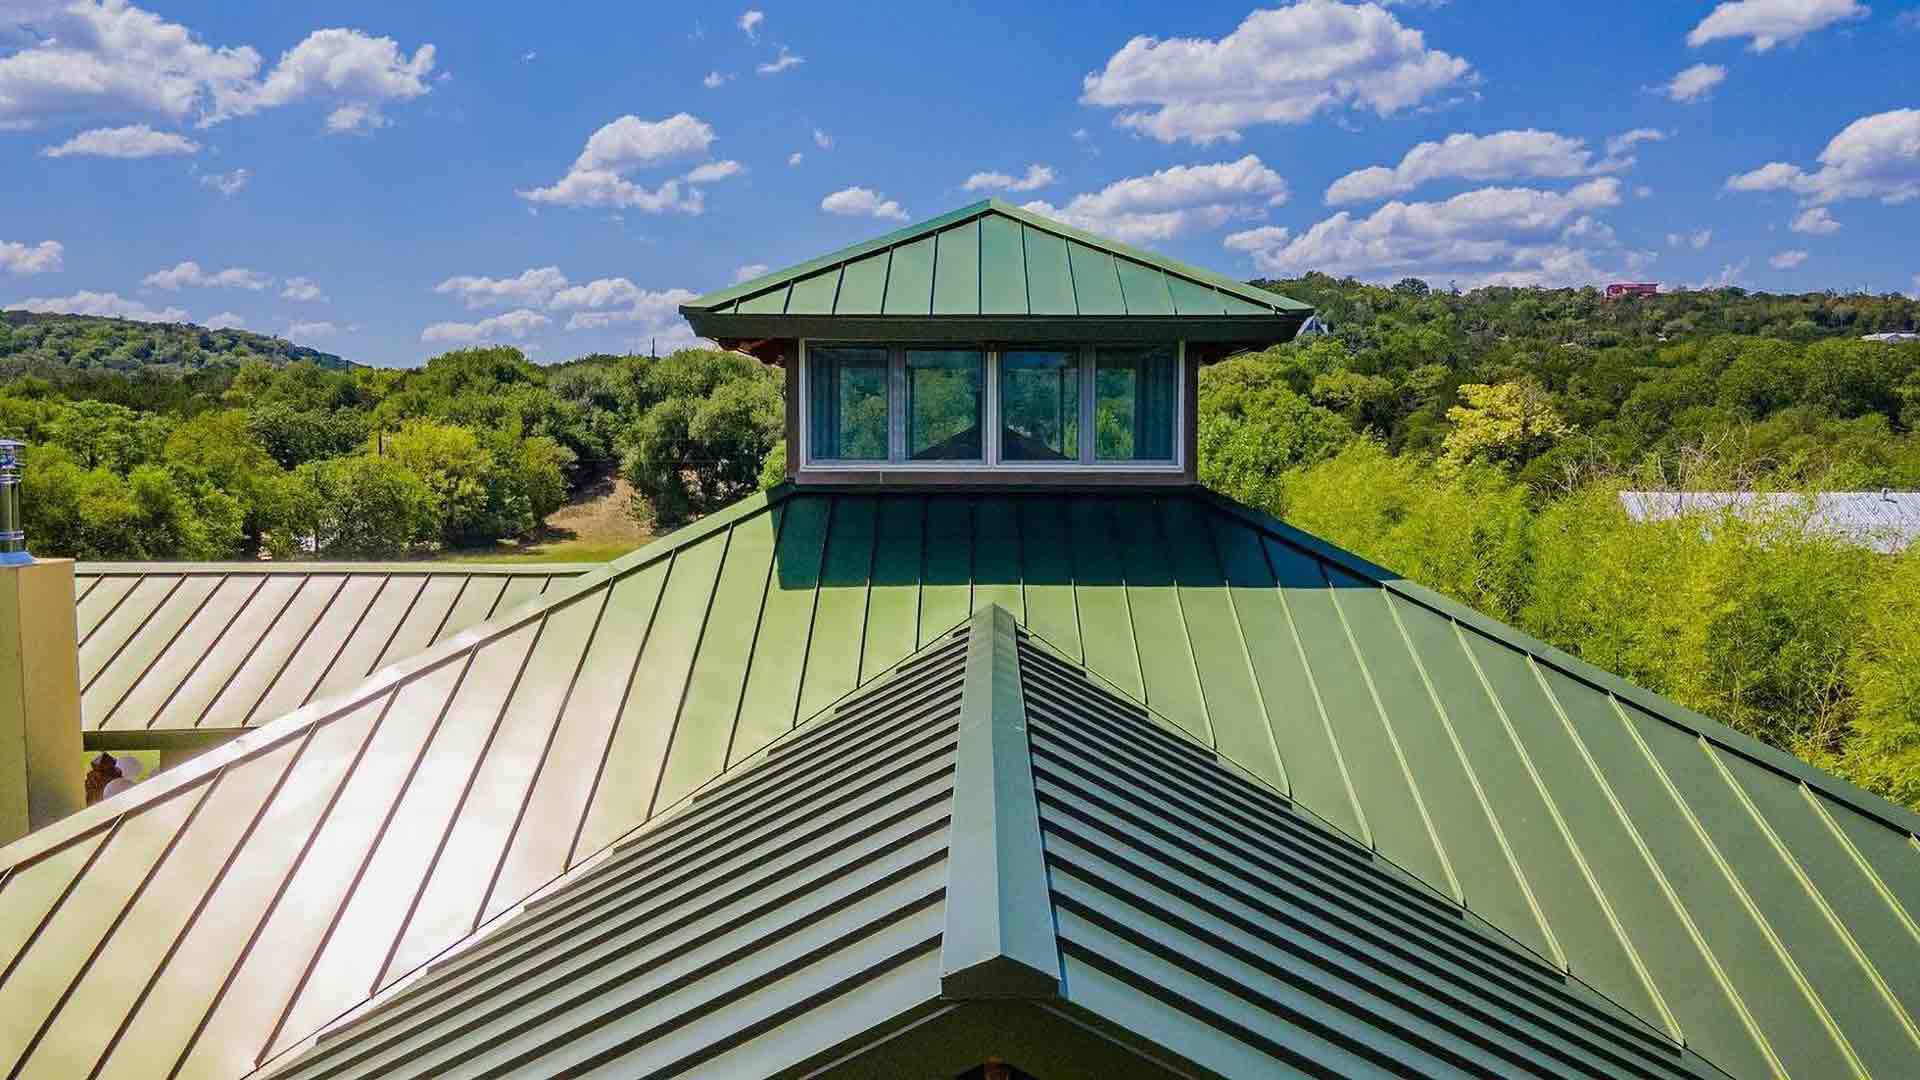 What Gauge Metal Roof Is Best: 24 Gauge vs. 26 Gauge